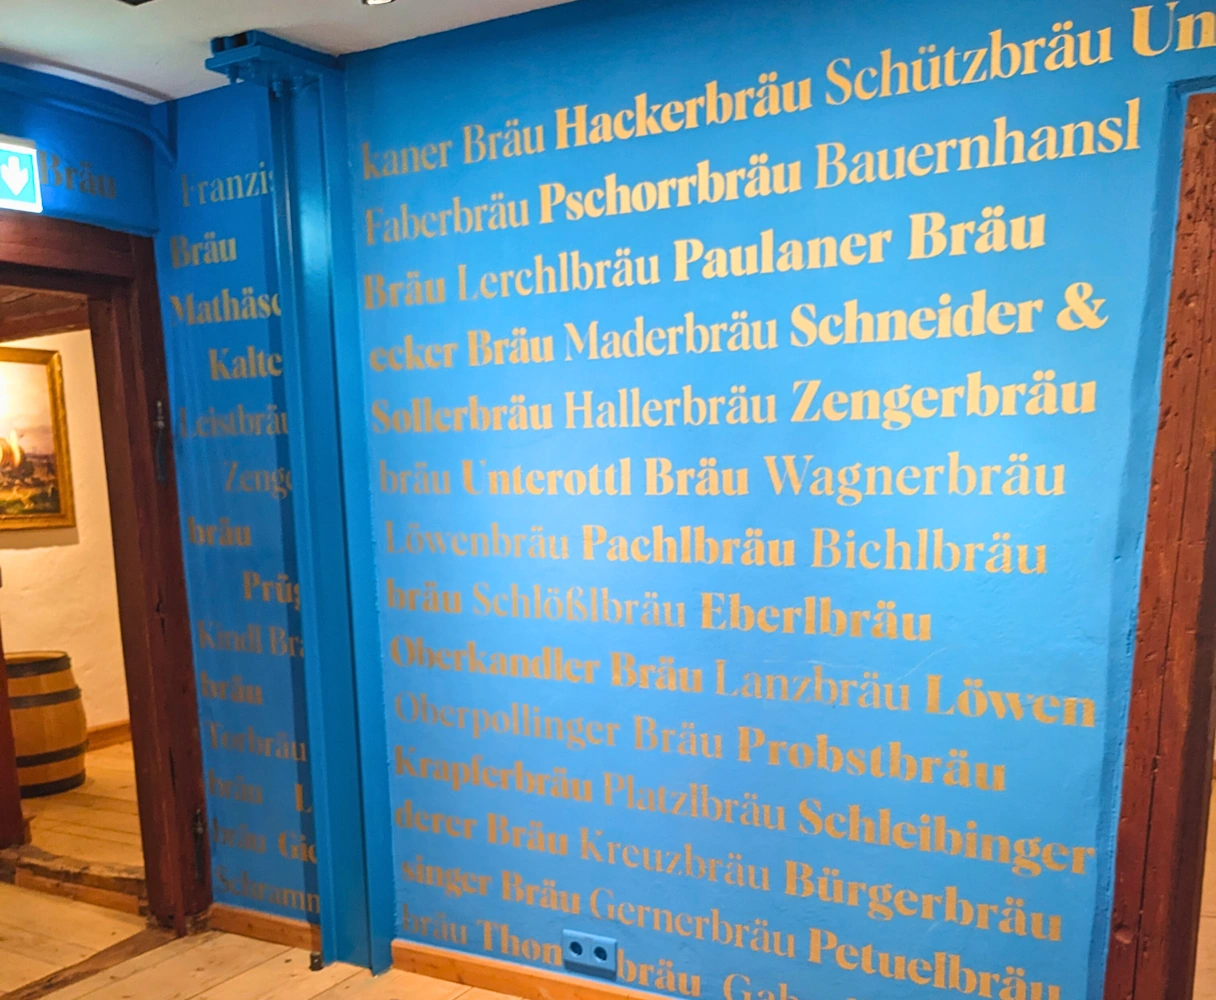 Blaue Wand im Bier & Oktoberfestmuseum mit Namen von bekannten Wirtshäusern und Biermarken in goldener Schrift